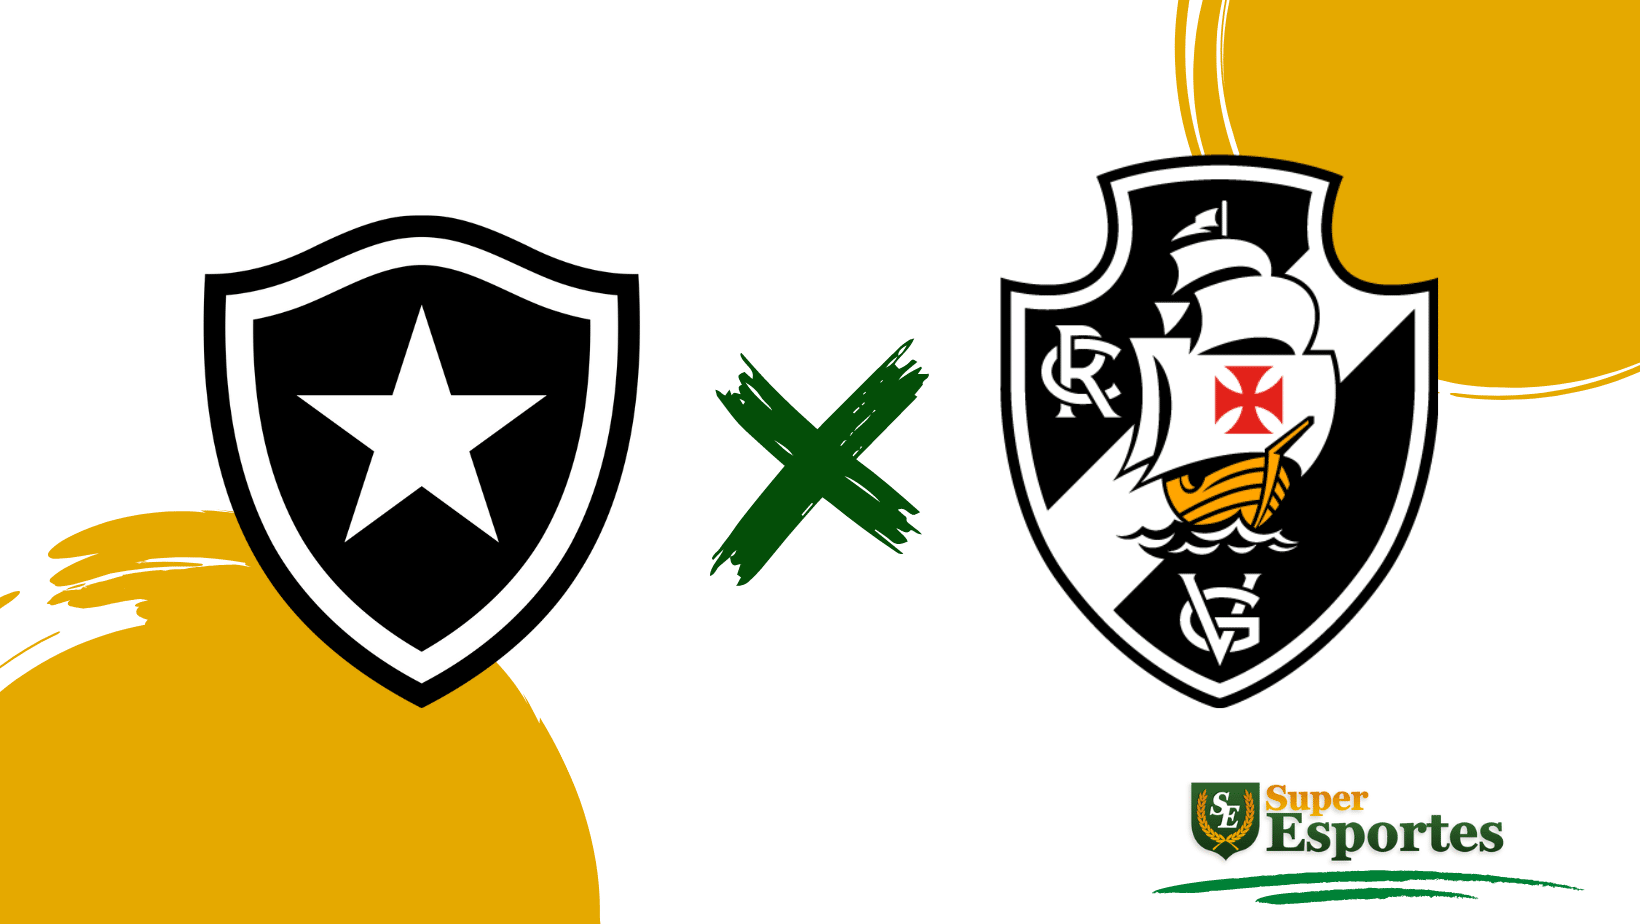 Rodada do Brasileirão tem clássico entre Vasco x Botafogo nesta